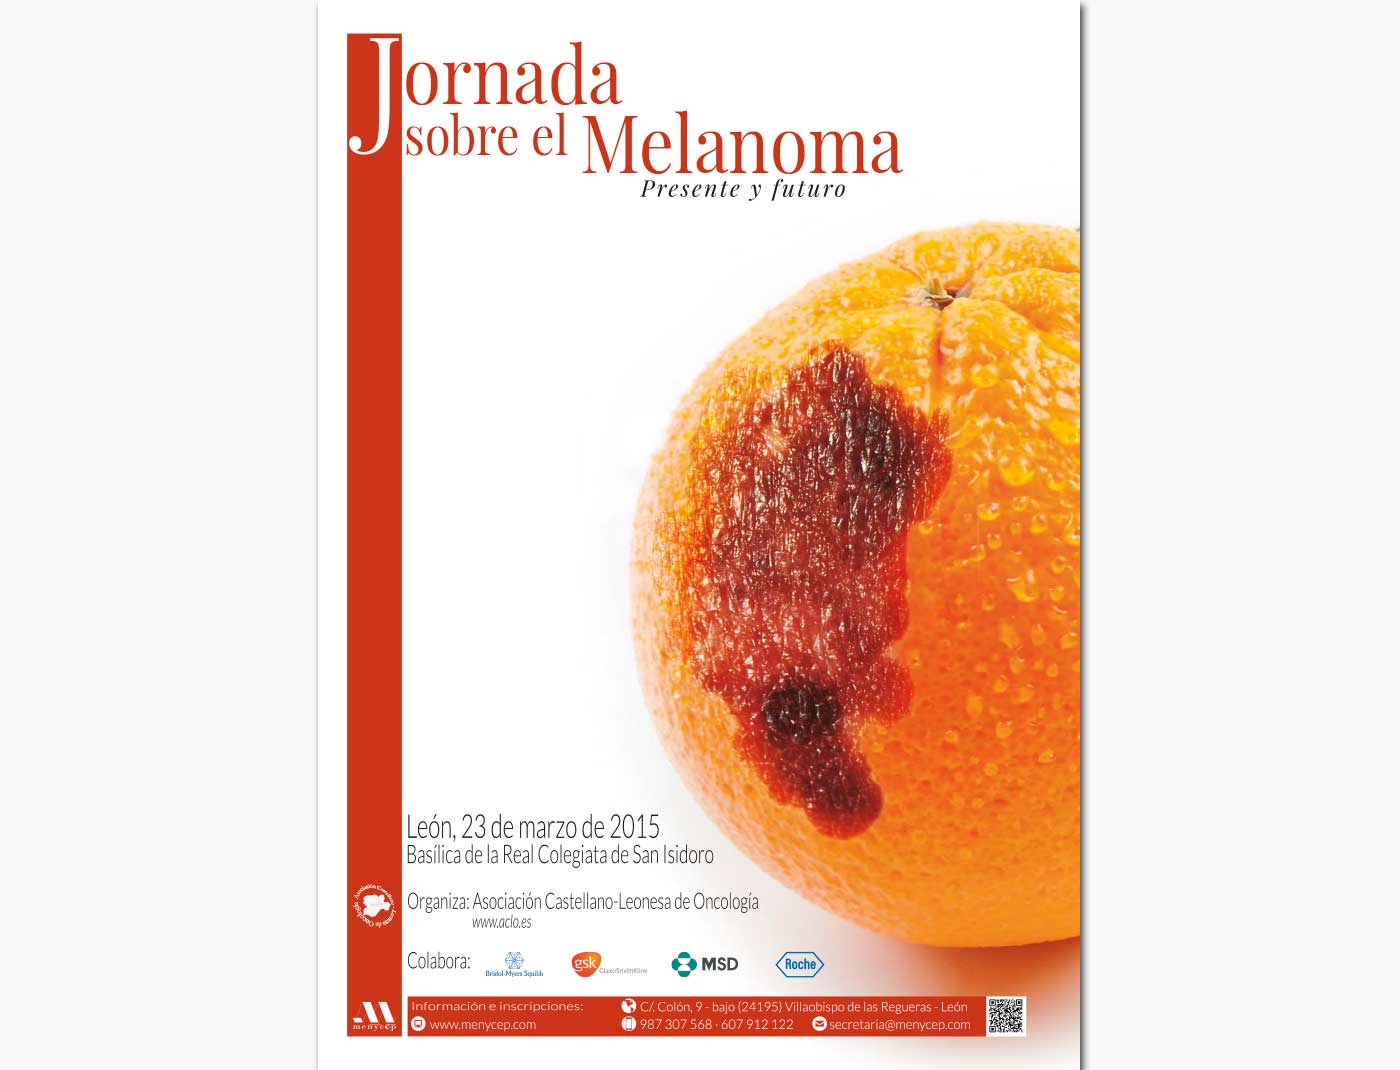 Jornada sobre el Melanoma: Presente y futuro